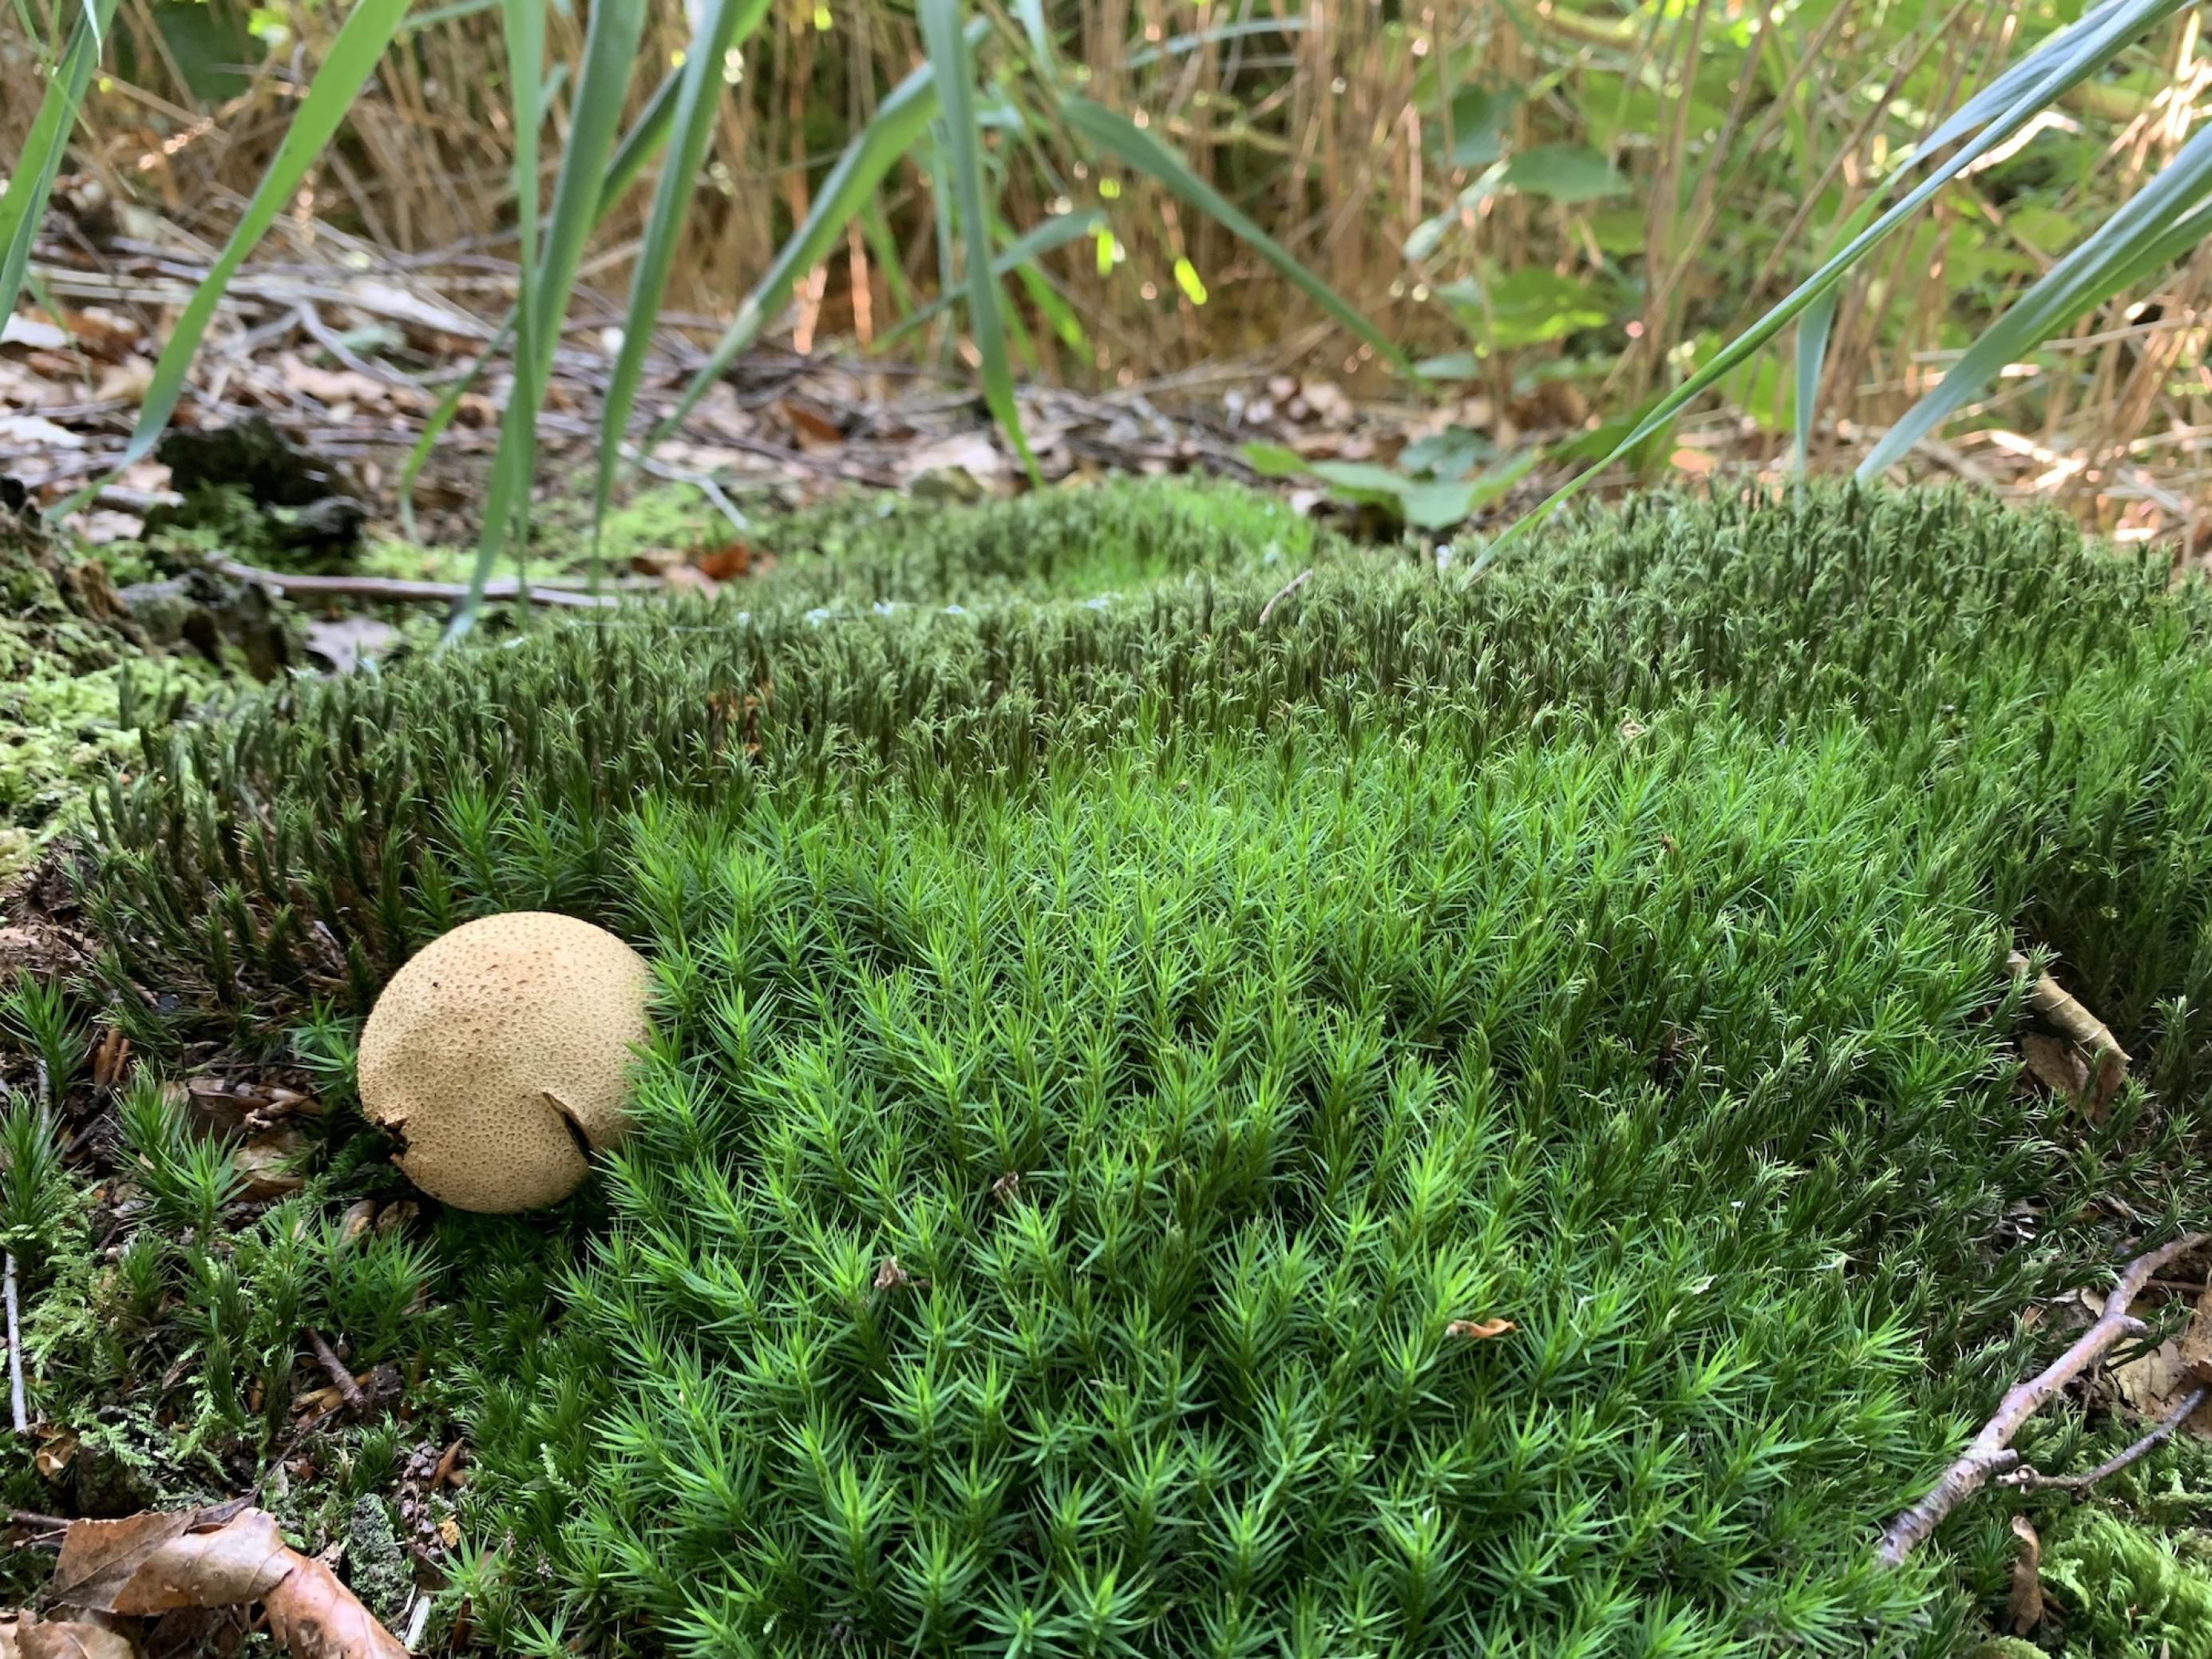 Ein Stück Moosteppich auf dem Waldboden, an seinem Rand ein tischtennisballgroßer Bovist (Pilz)